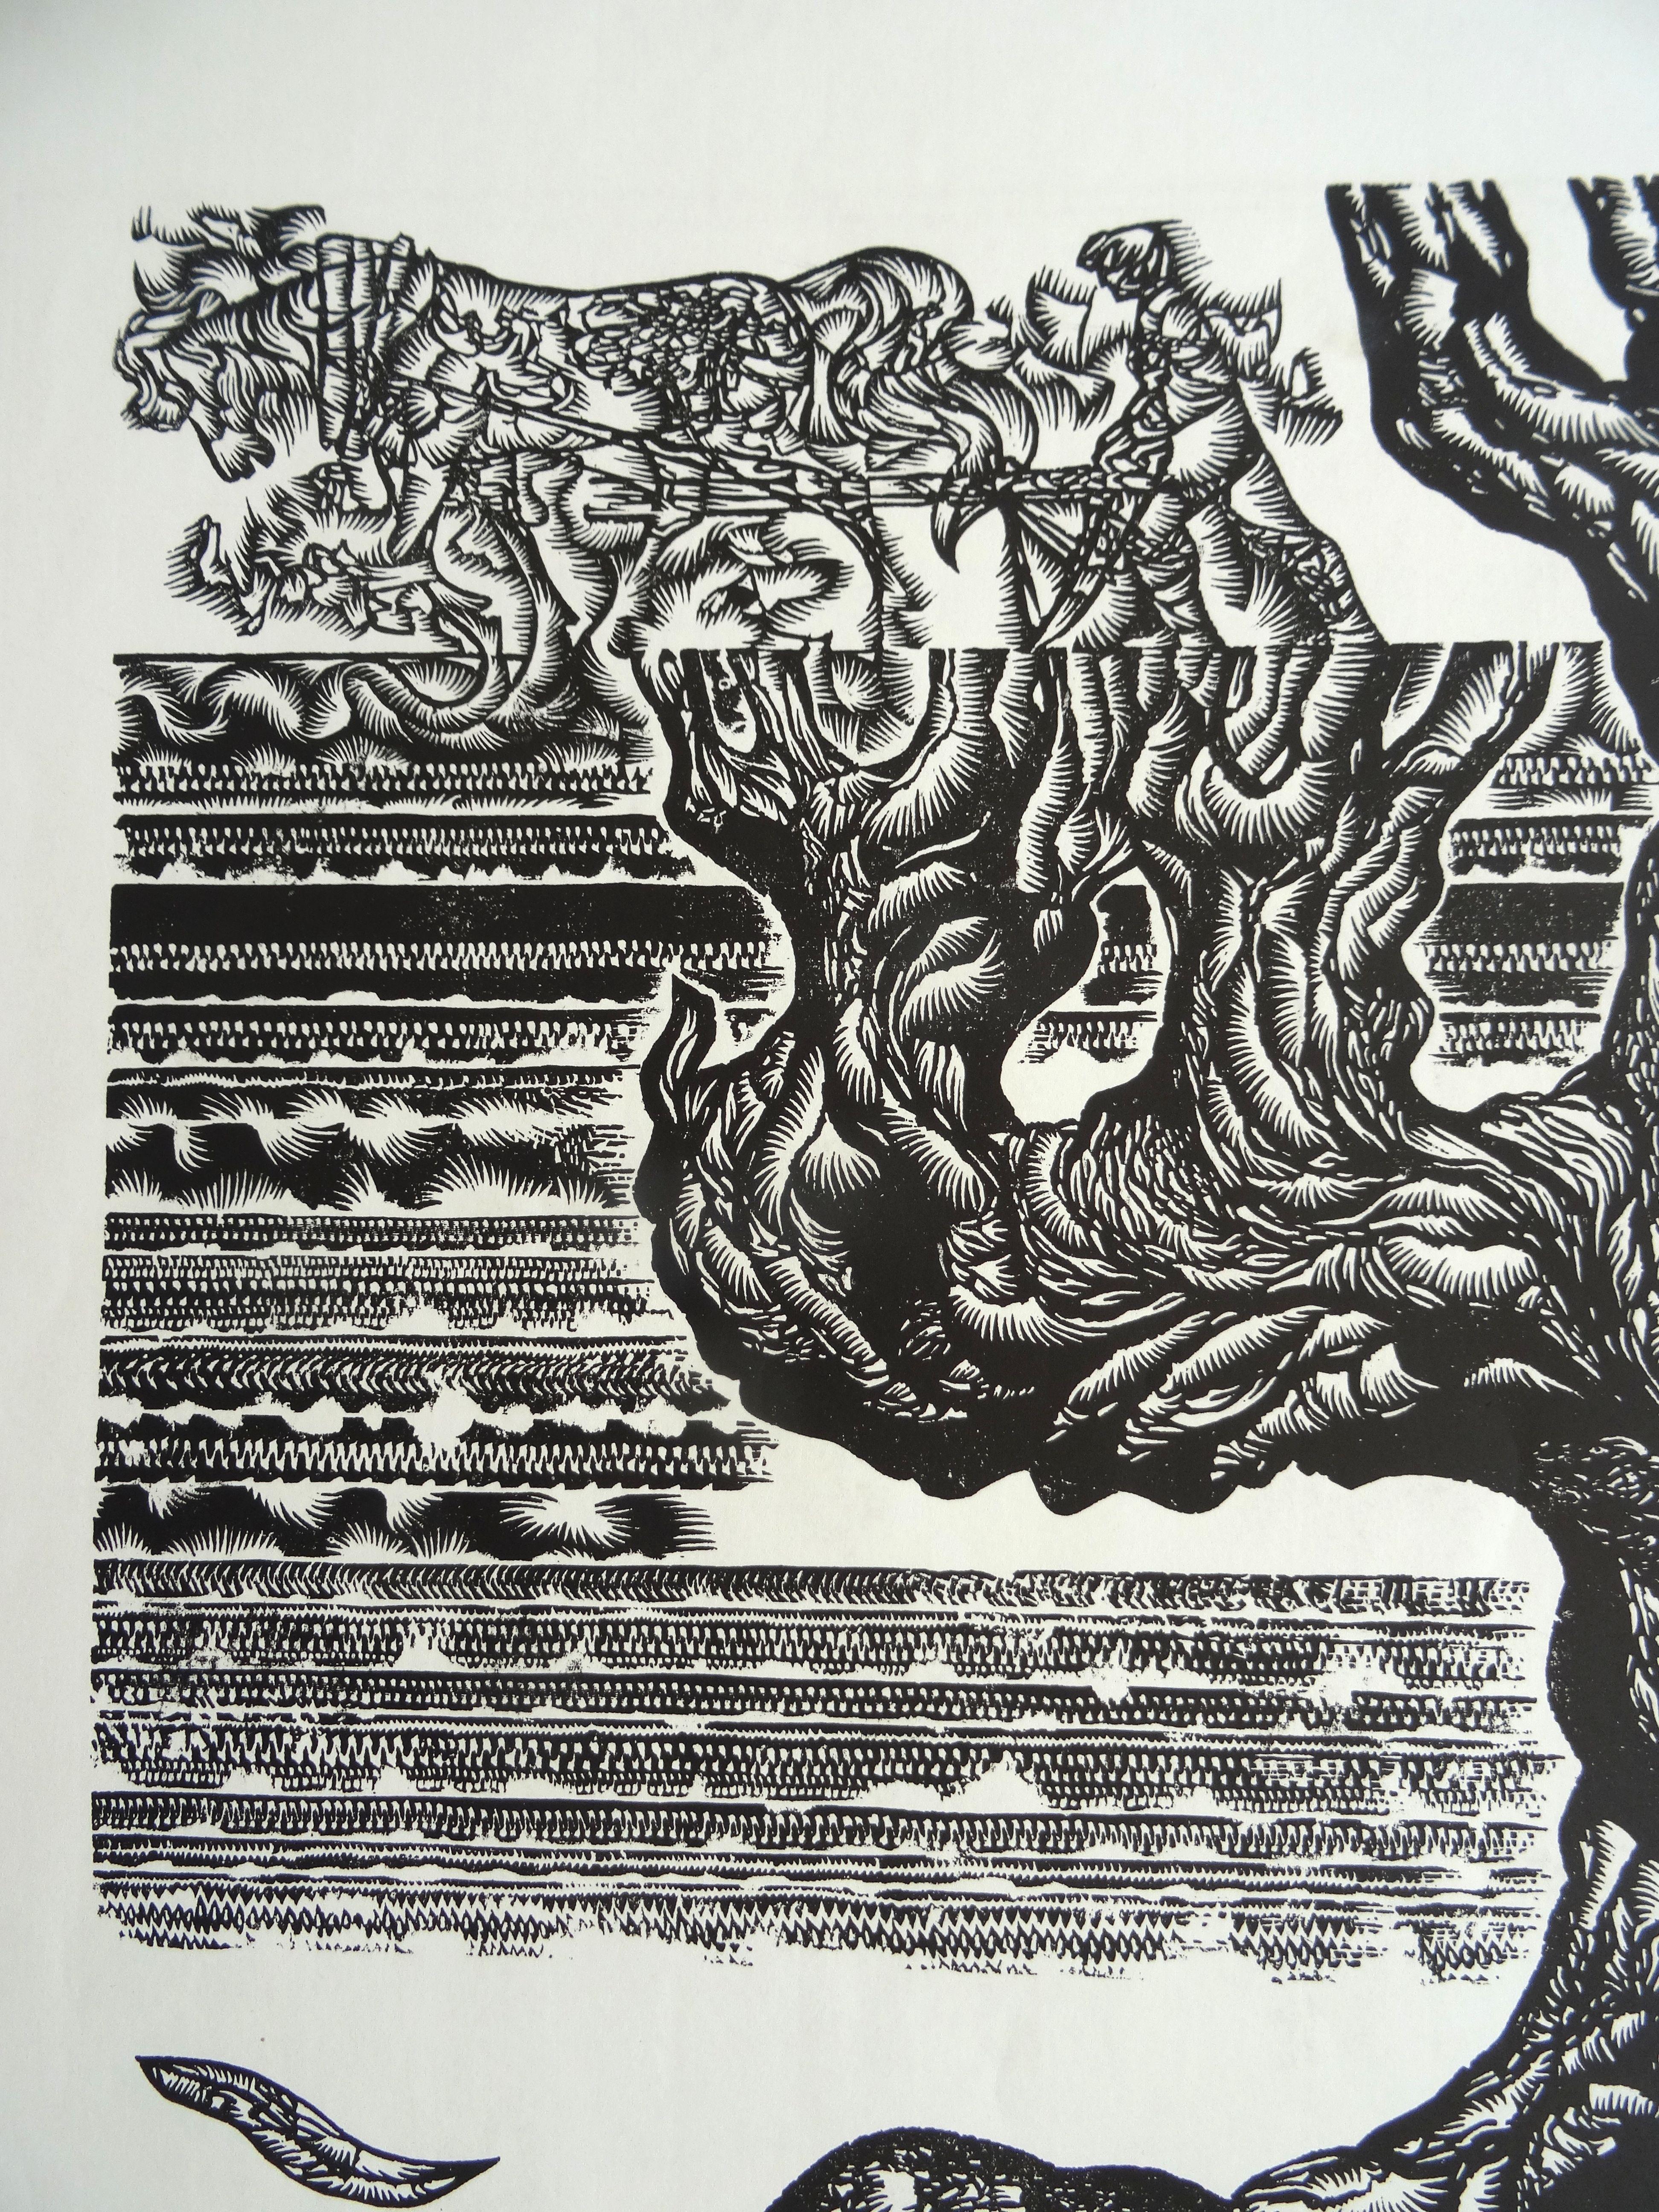 Großvaterbaum. 1982, Papier, Linolschnitt, Druckgröße 50x55 cm; insgesamt 65x65 cm – Print von Dainis Rozkalns